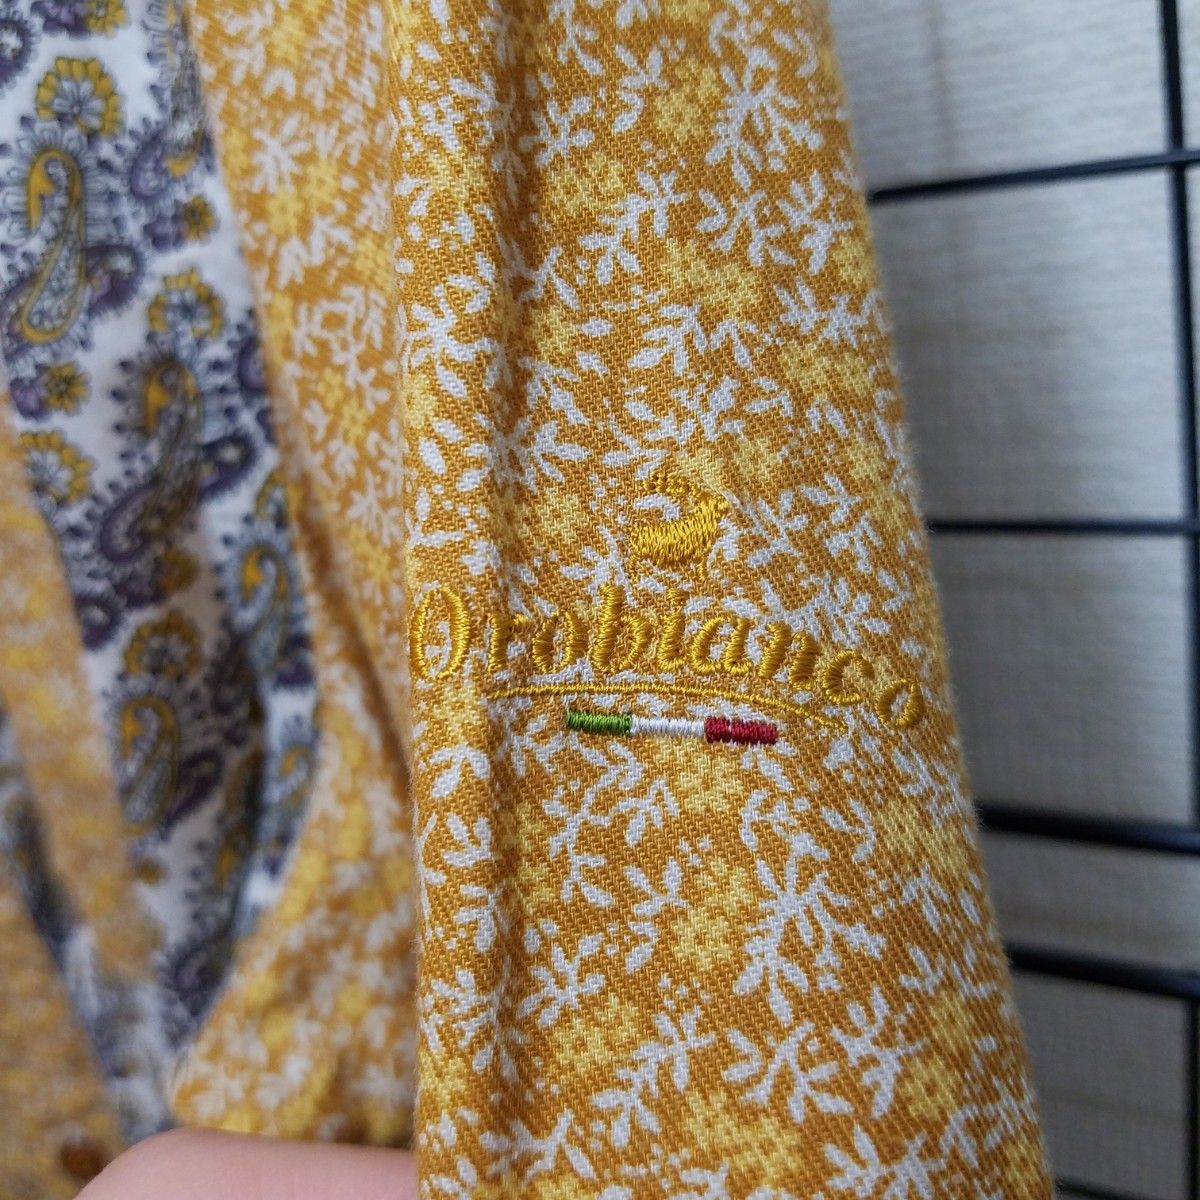 日本製 Orobianco Flower&Paisley L/S Shirts